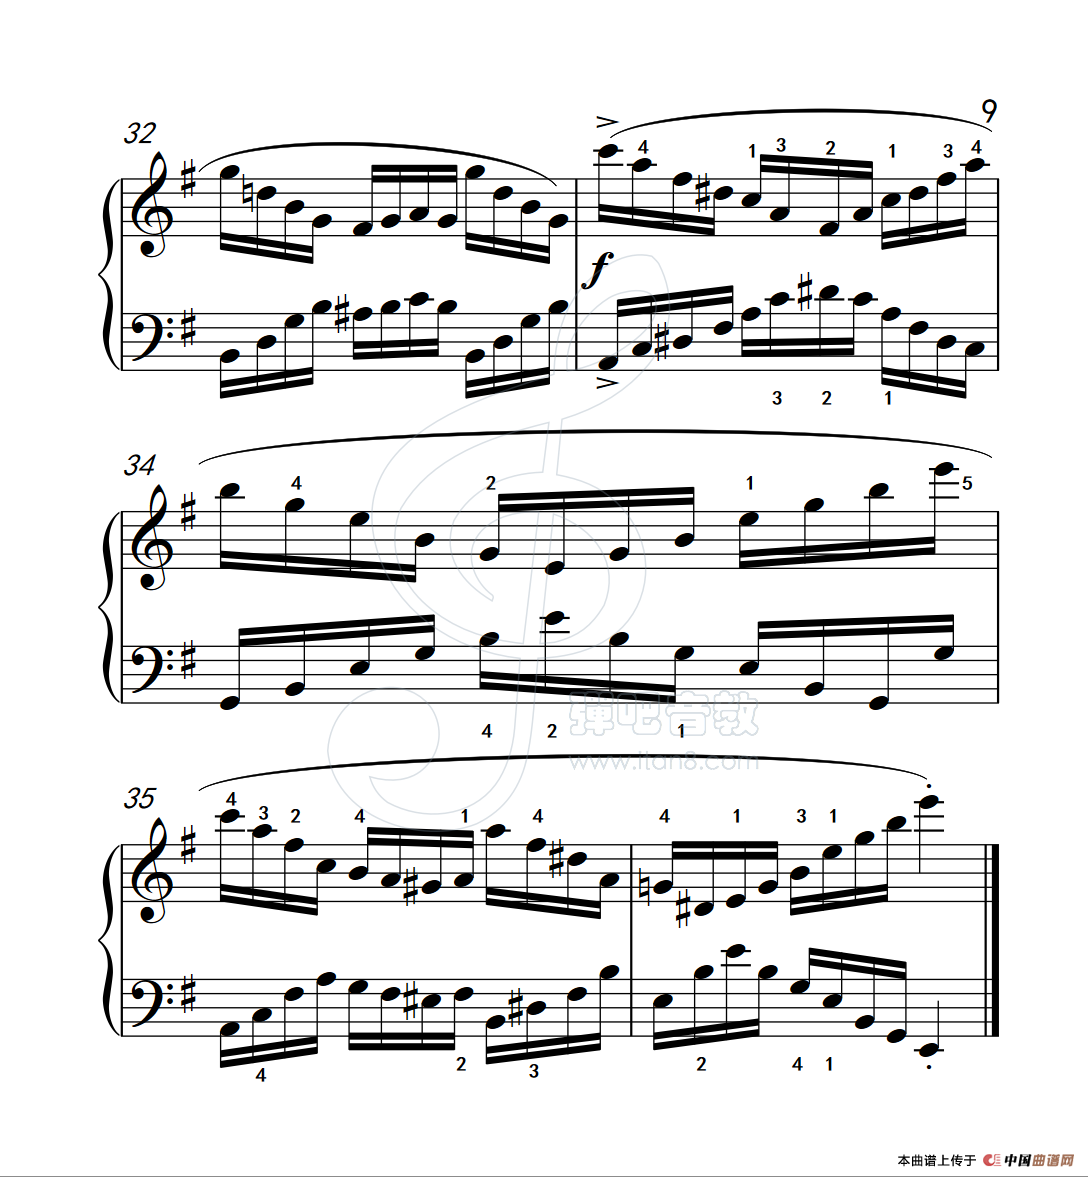 《练习曲 35》钢琴曲谱图分享